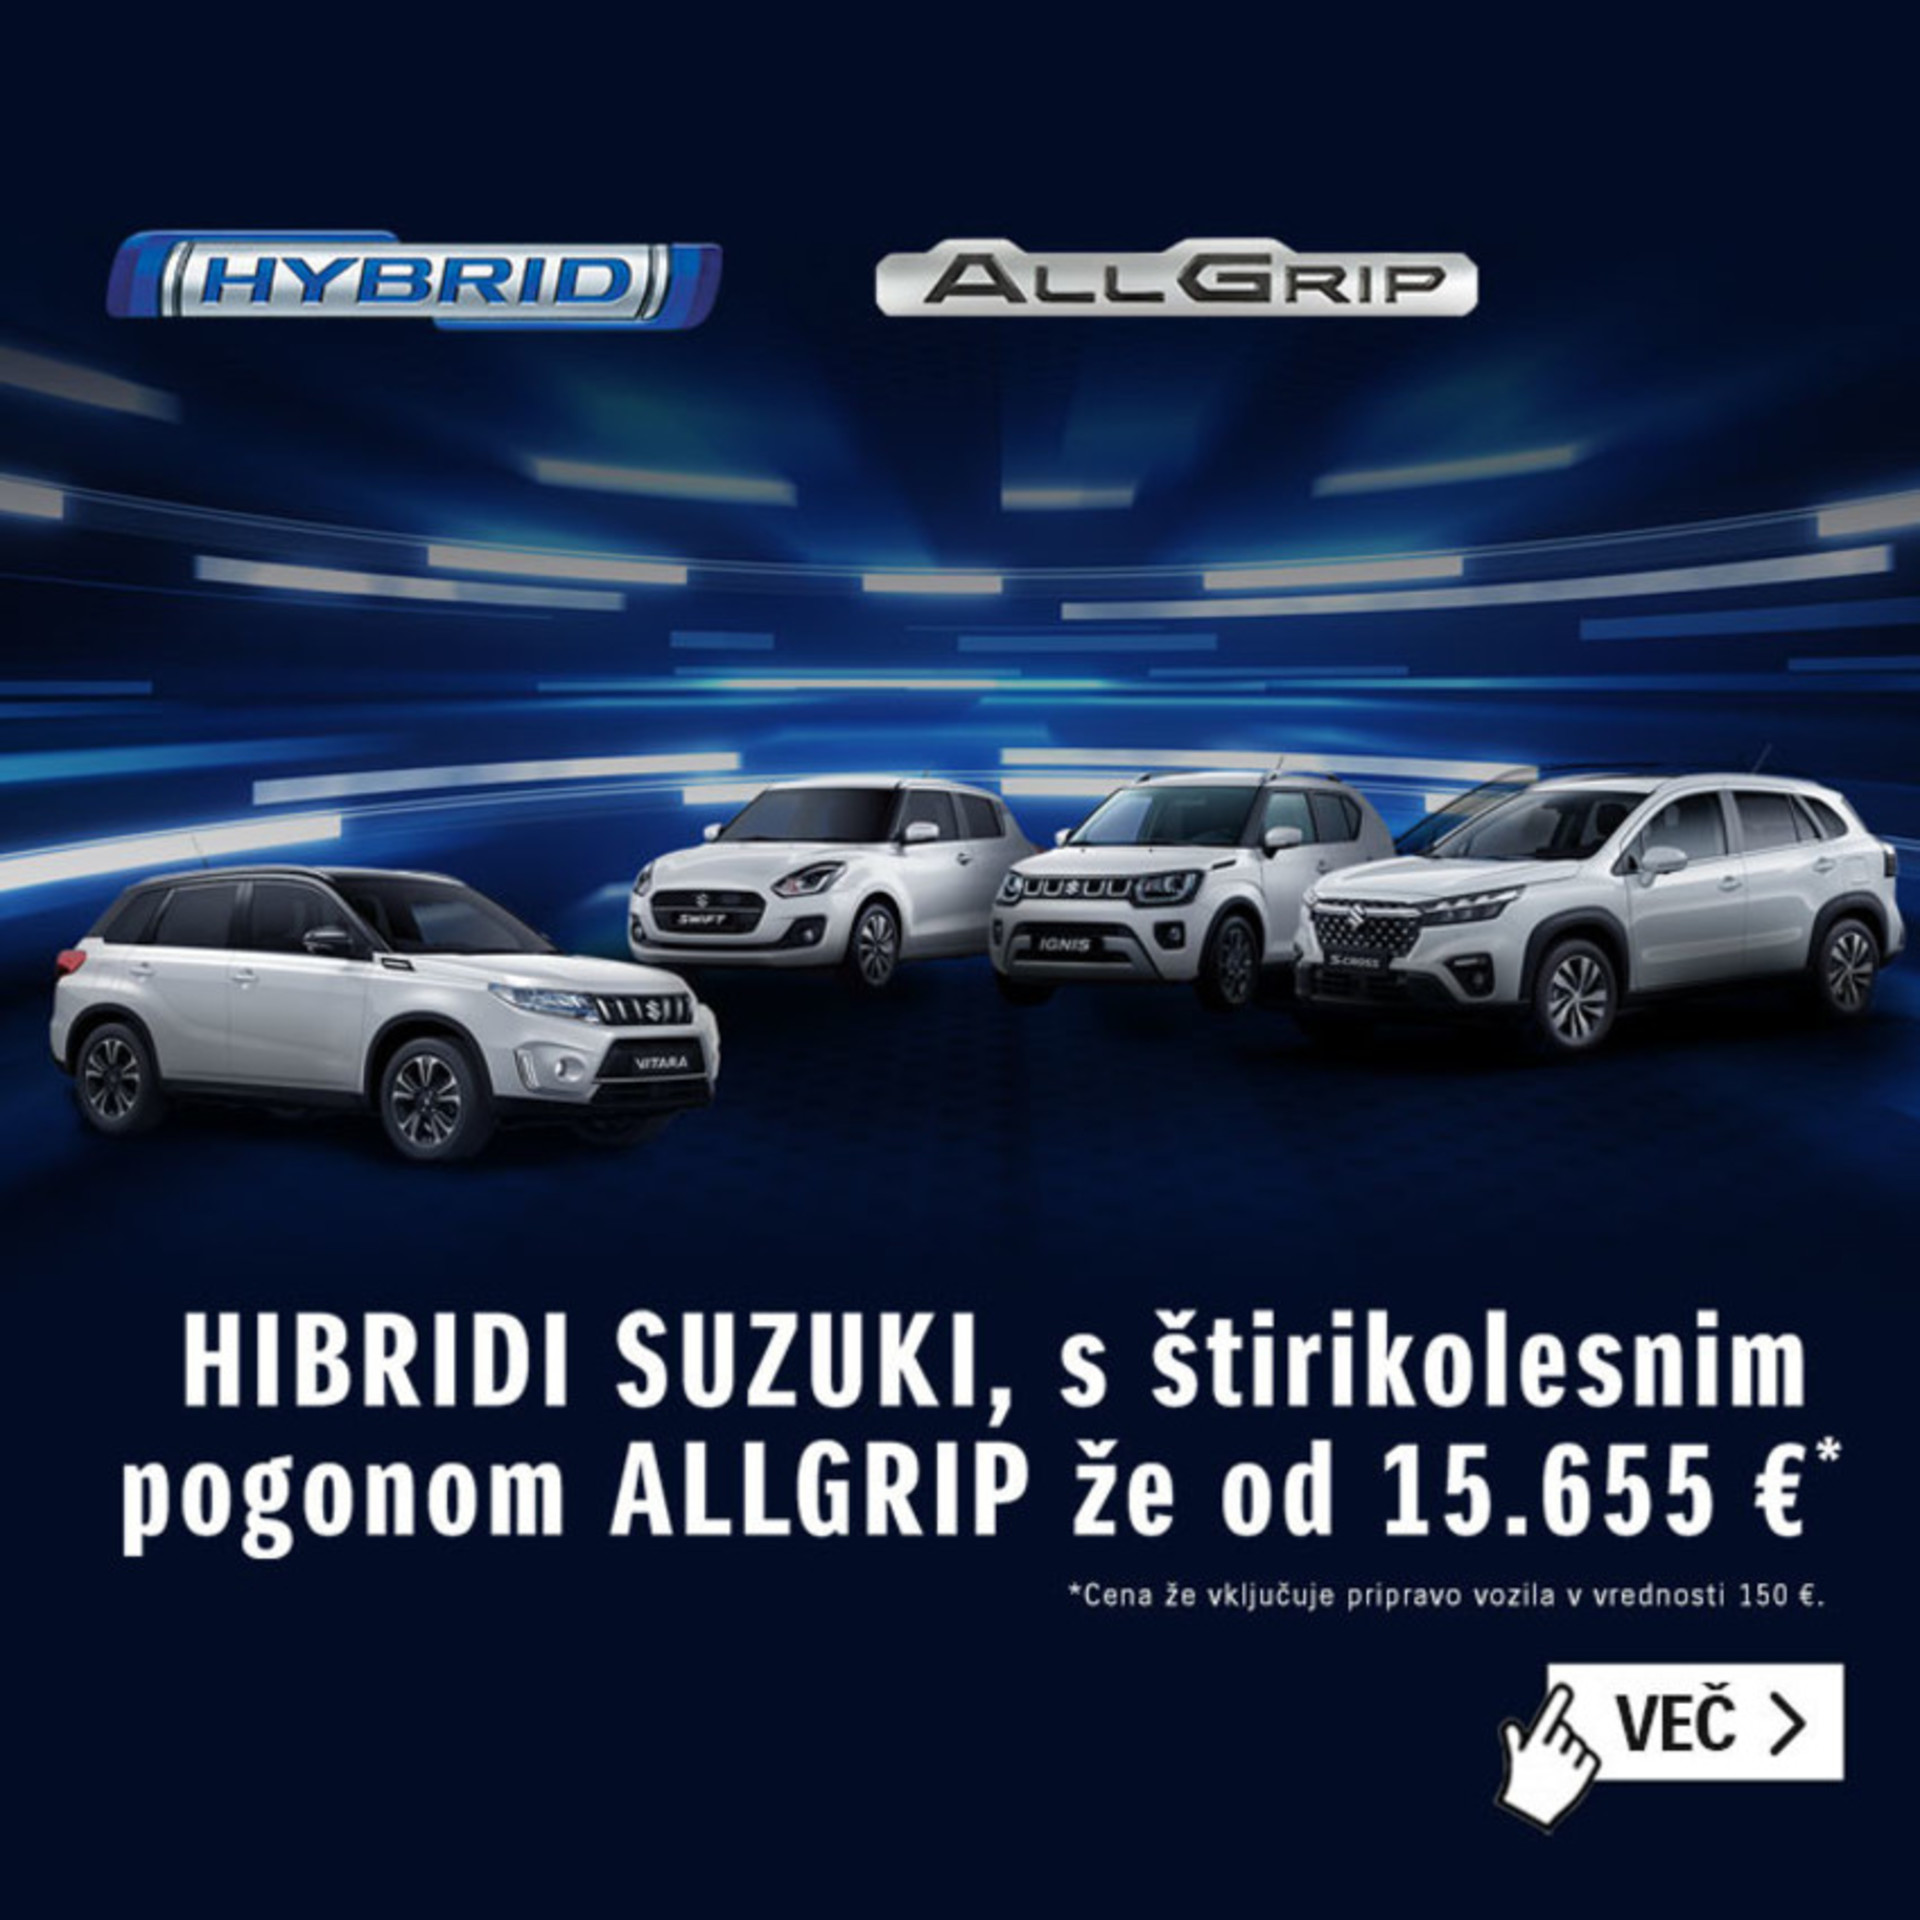 SUZUKI HIBRIDI AllGrip že od 15.655 EUR!